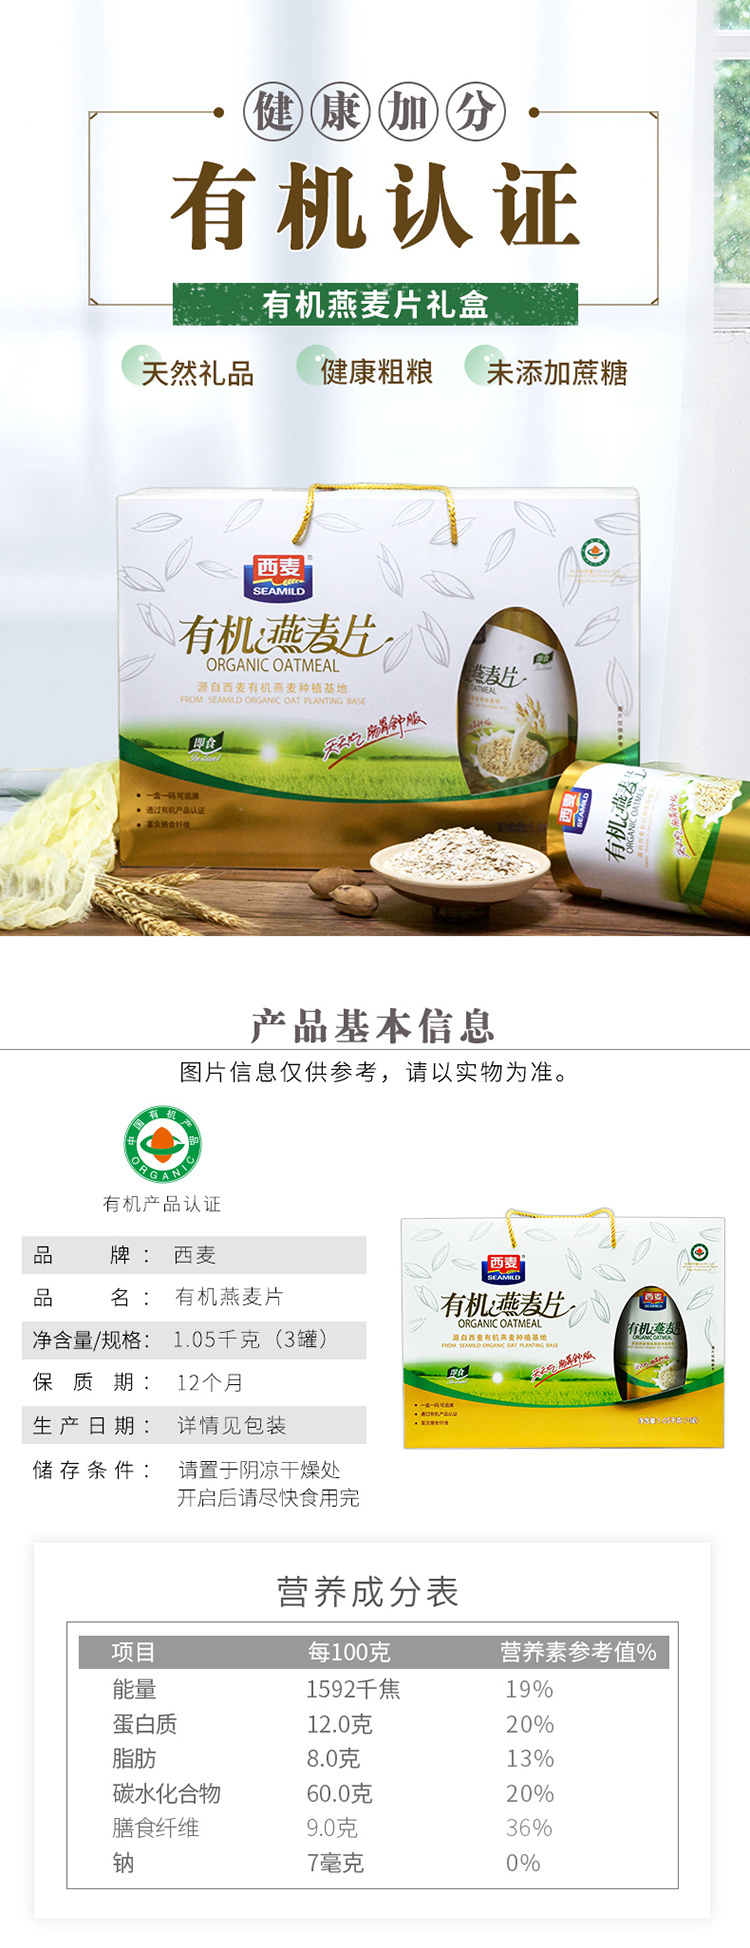 桂林西麦食品股份有限公司